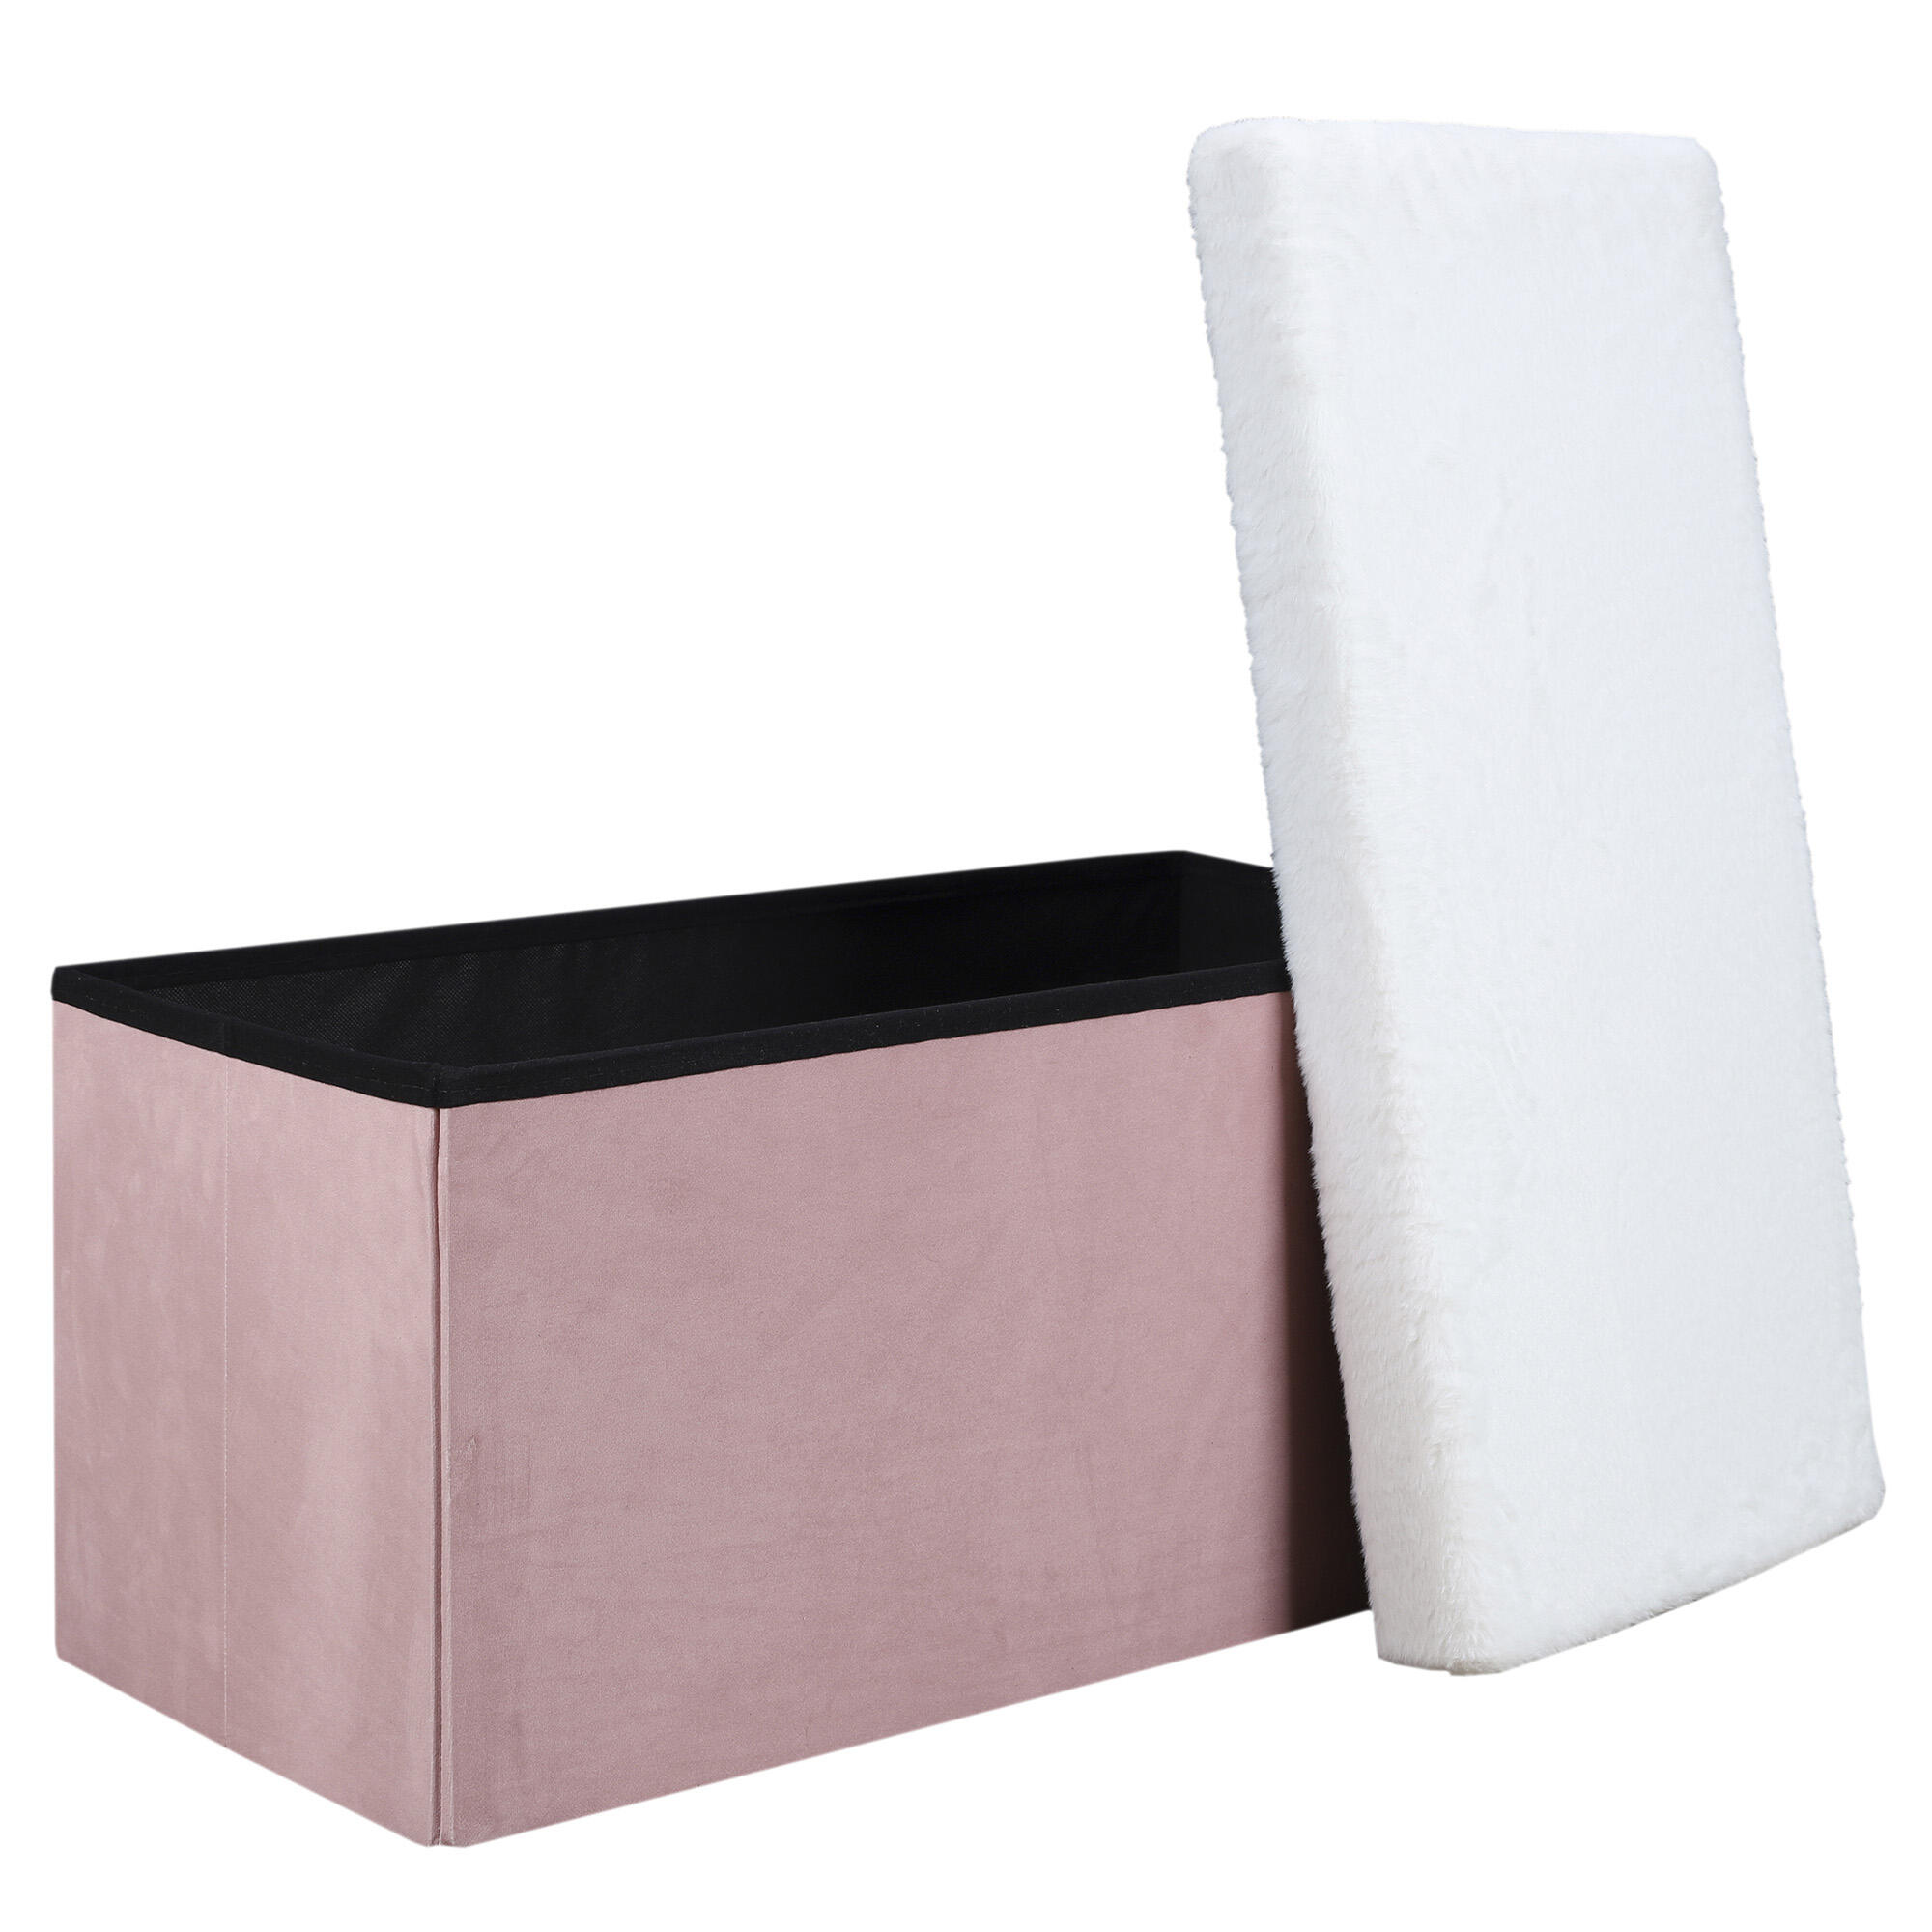 Baúl pie de cama color rosa y blancode 77x38x38 cm (anchoxaltoxfondo)